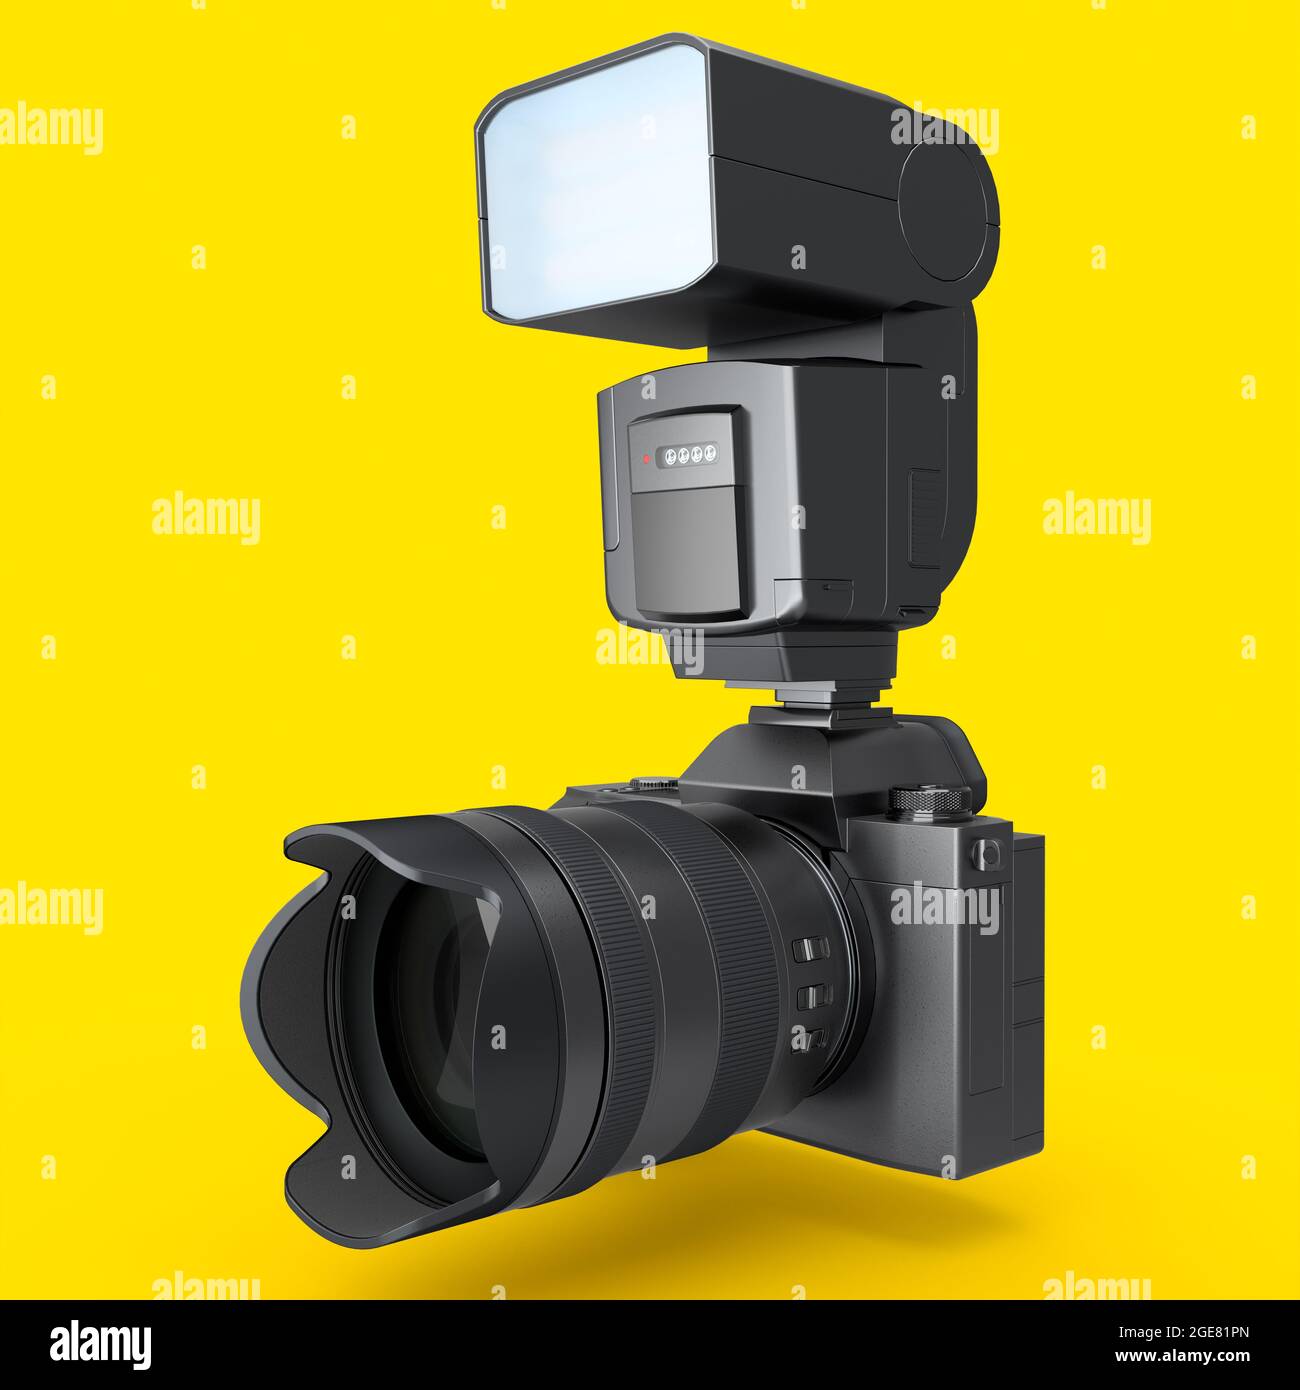 Concetto di fotocamera reflex digitale inesistente con obiettivo e flash esterno speedlight isolato su sfondo giallo. Rendering 3D e illustrazione di professional Foto Stock